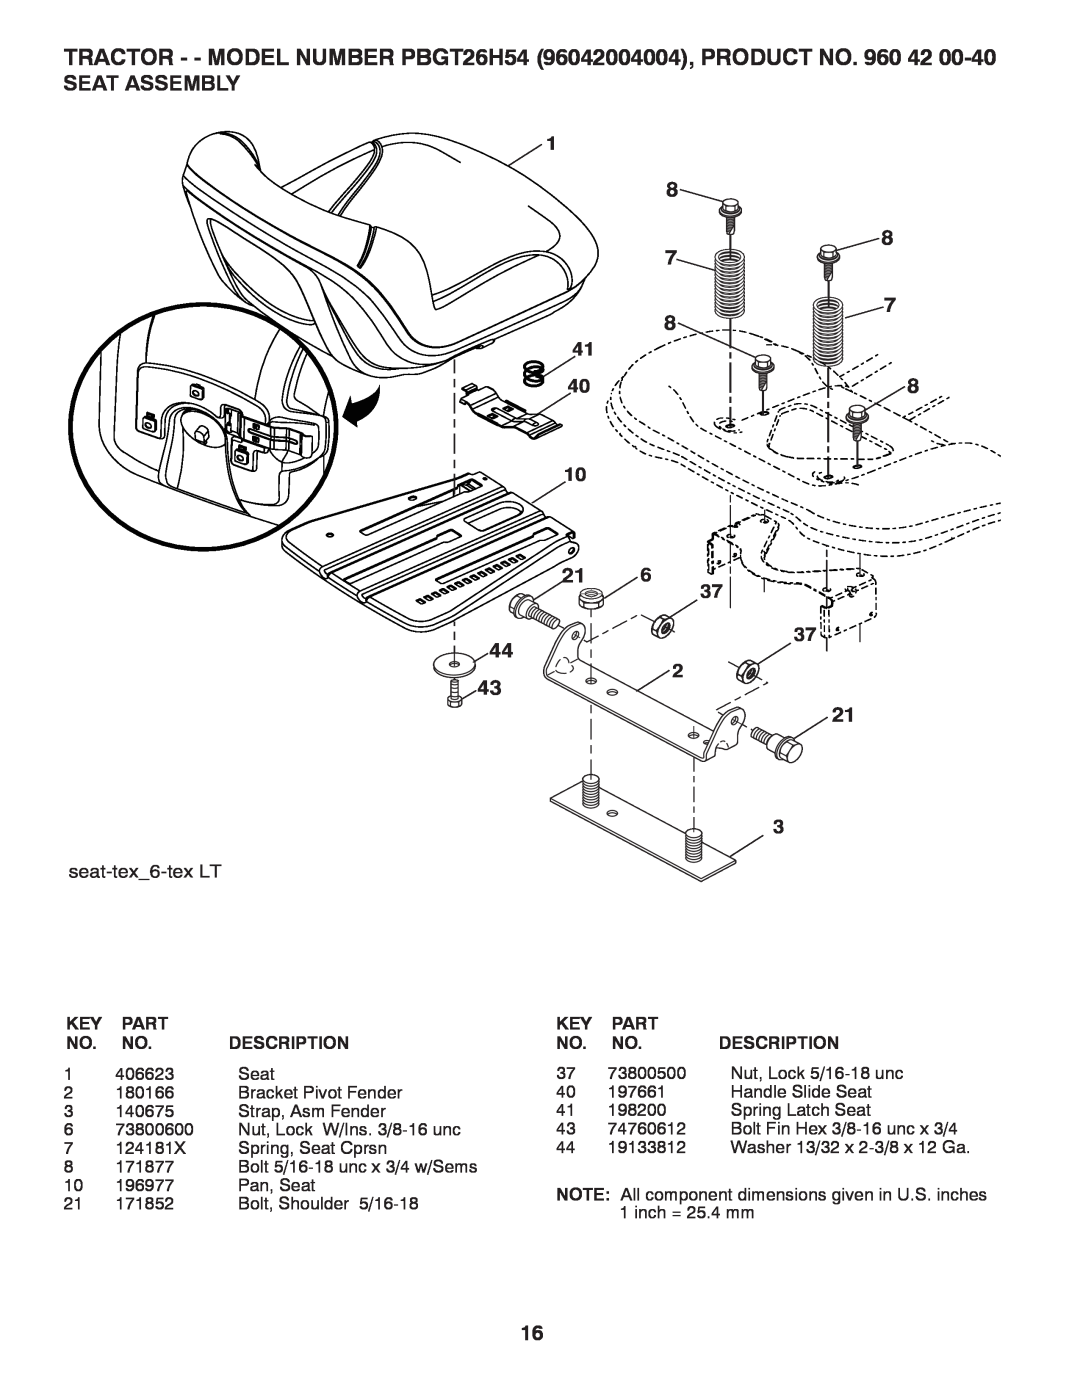 Poulan PBGT26H54 manual Seat Assembly, 73800500, Nut, Lock 5/16-18 unc, seat-tex6-tex LT, Key Part No. No. Description 